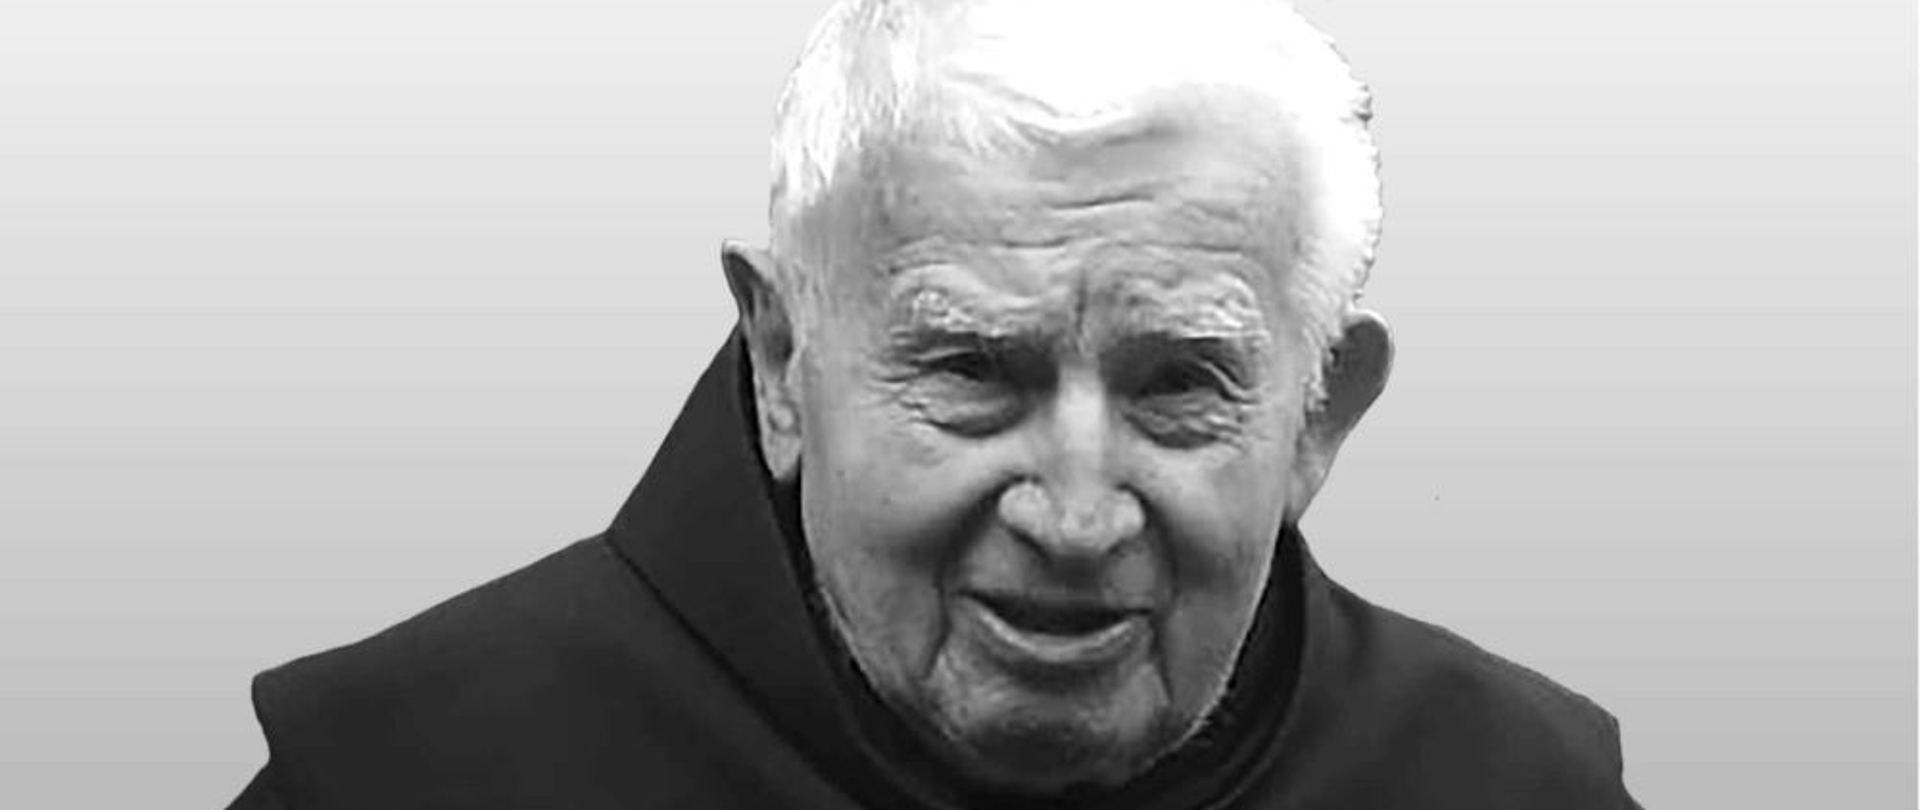 W wieku 89 lat zmarł o. Herkulan Wróbel jeden z najbardziej zasłużonych polskich misjonarzy w Argentynie. Uroczystości pogrzebowe pod przewodnictwem Nuncjusza Apostolskiego w Argentynie, abpa Mirosława Adamczyka, odbędą się w sobotę 30 grudnia o godz. 11 w Martin Coronado.